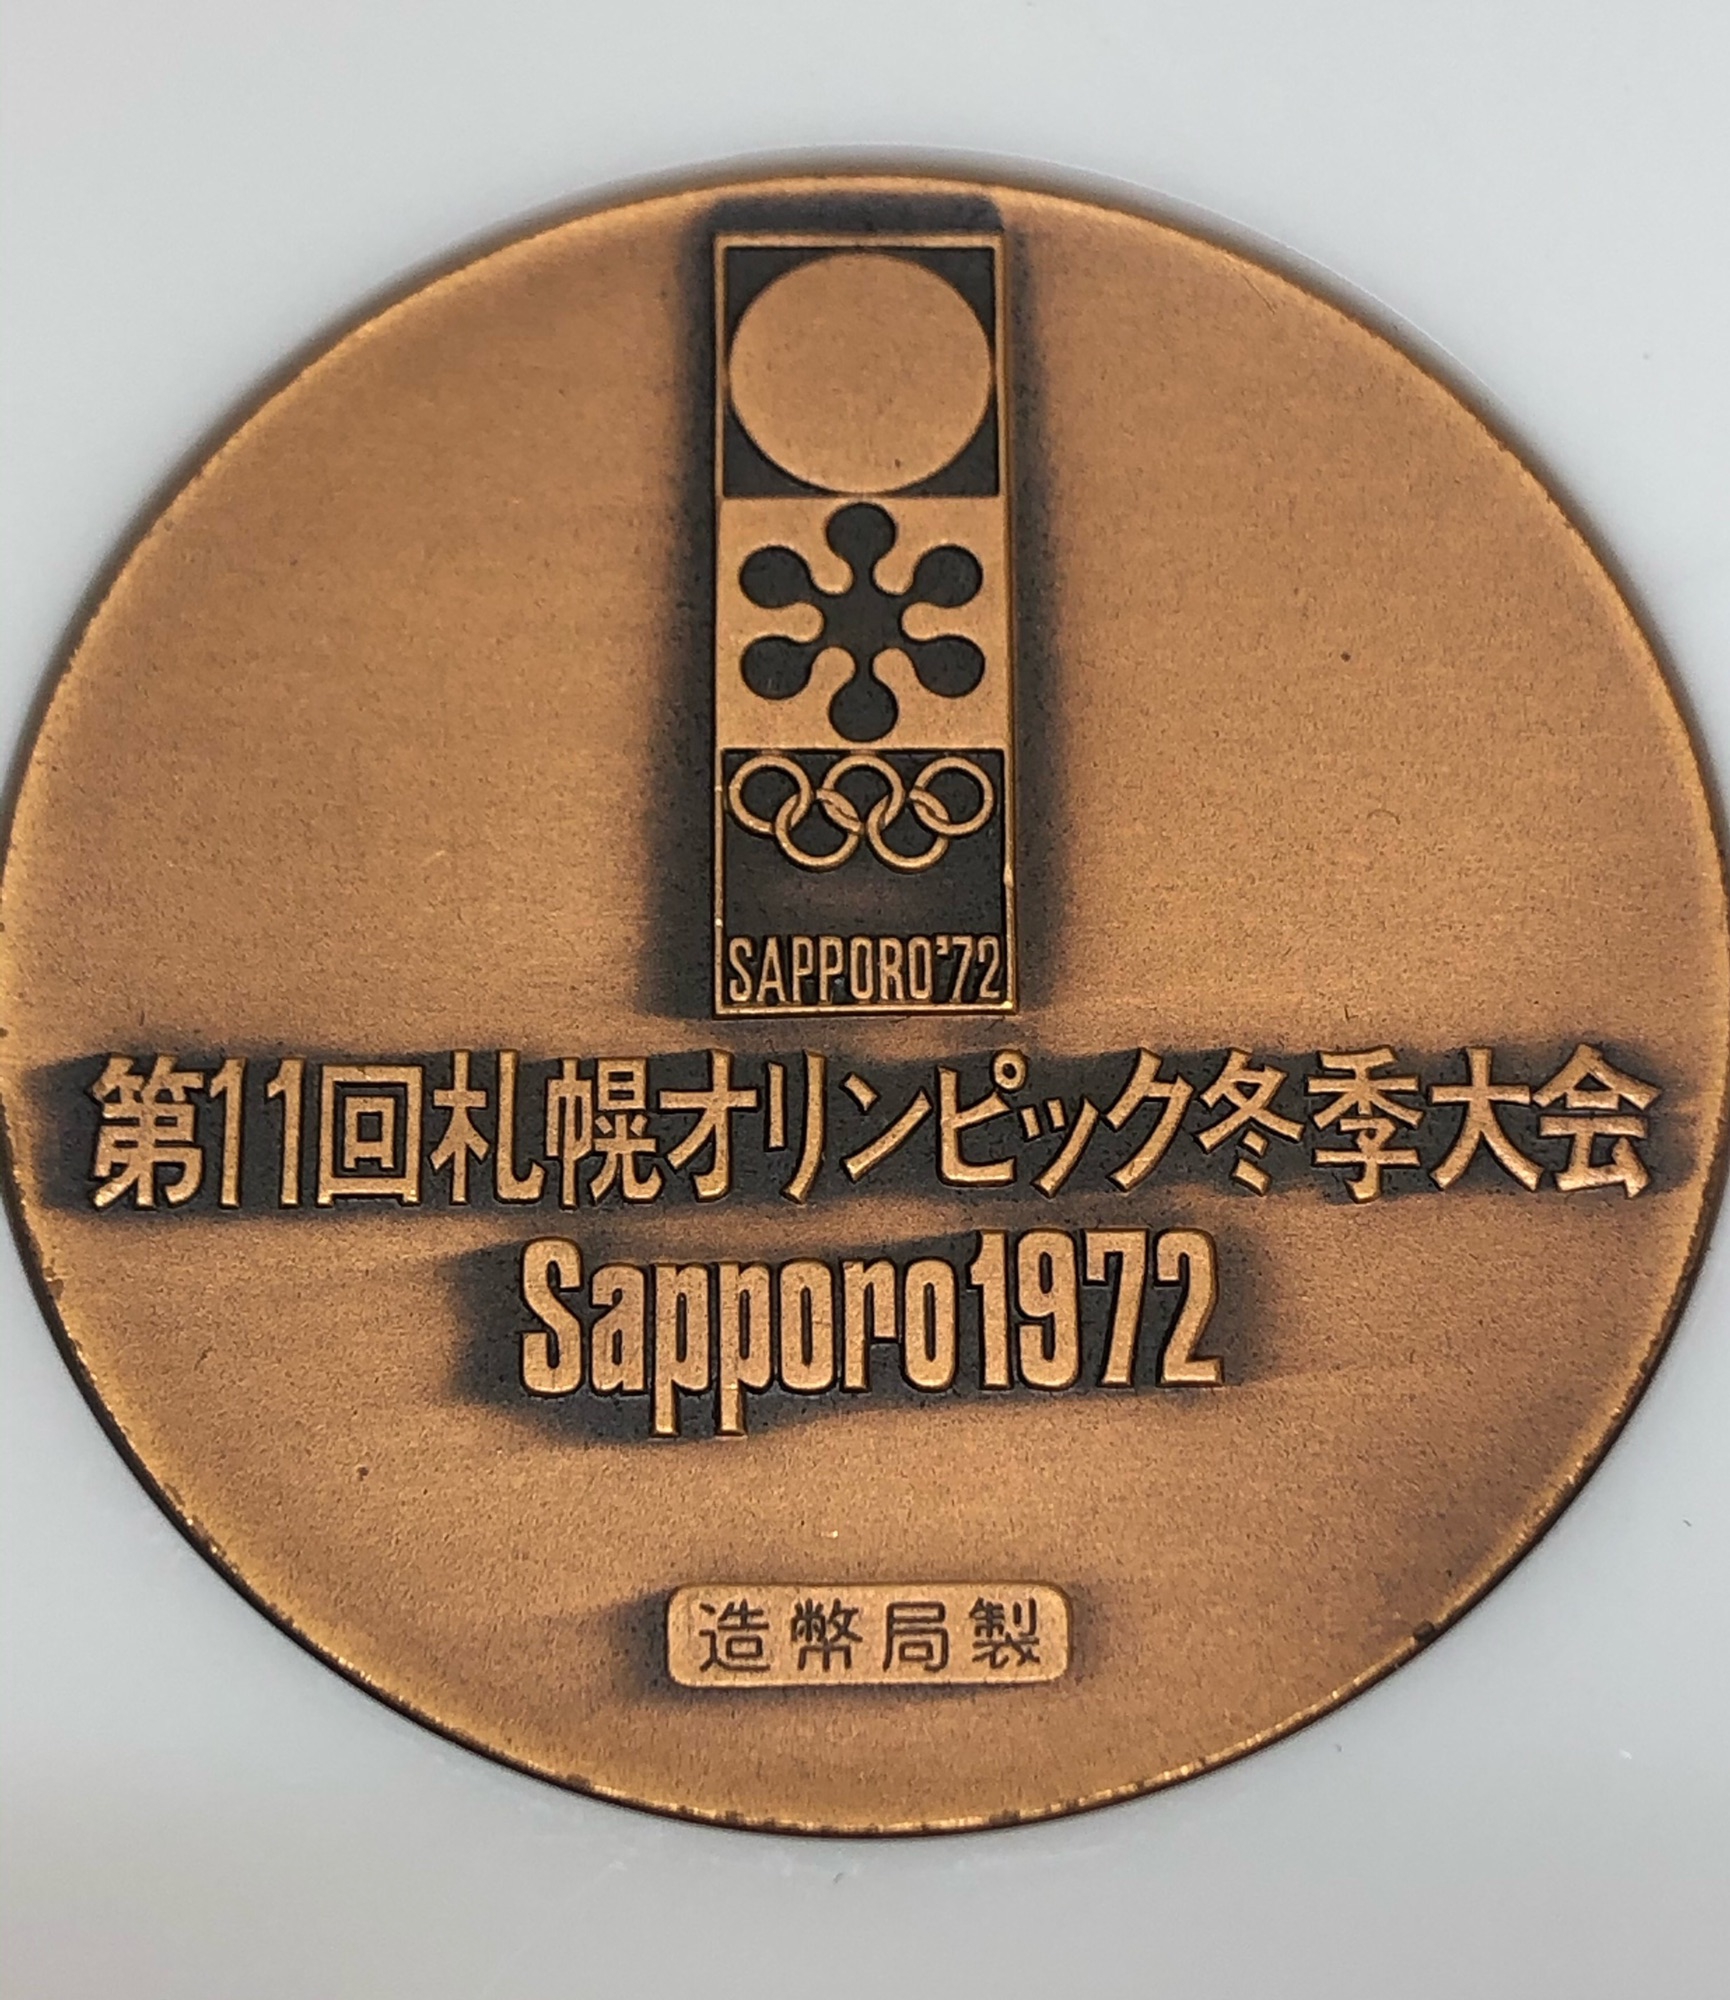 オリンピック冬季大会歴代公式記念メダル 【500円引きクーポン